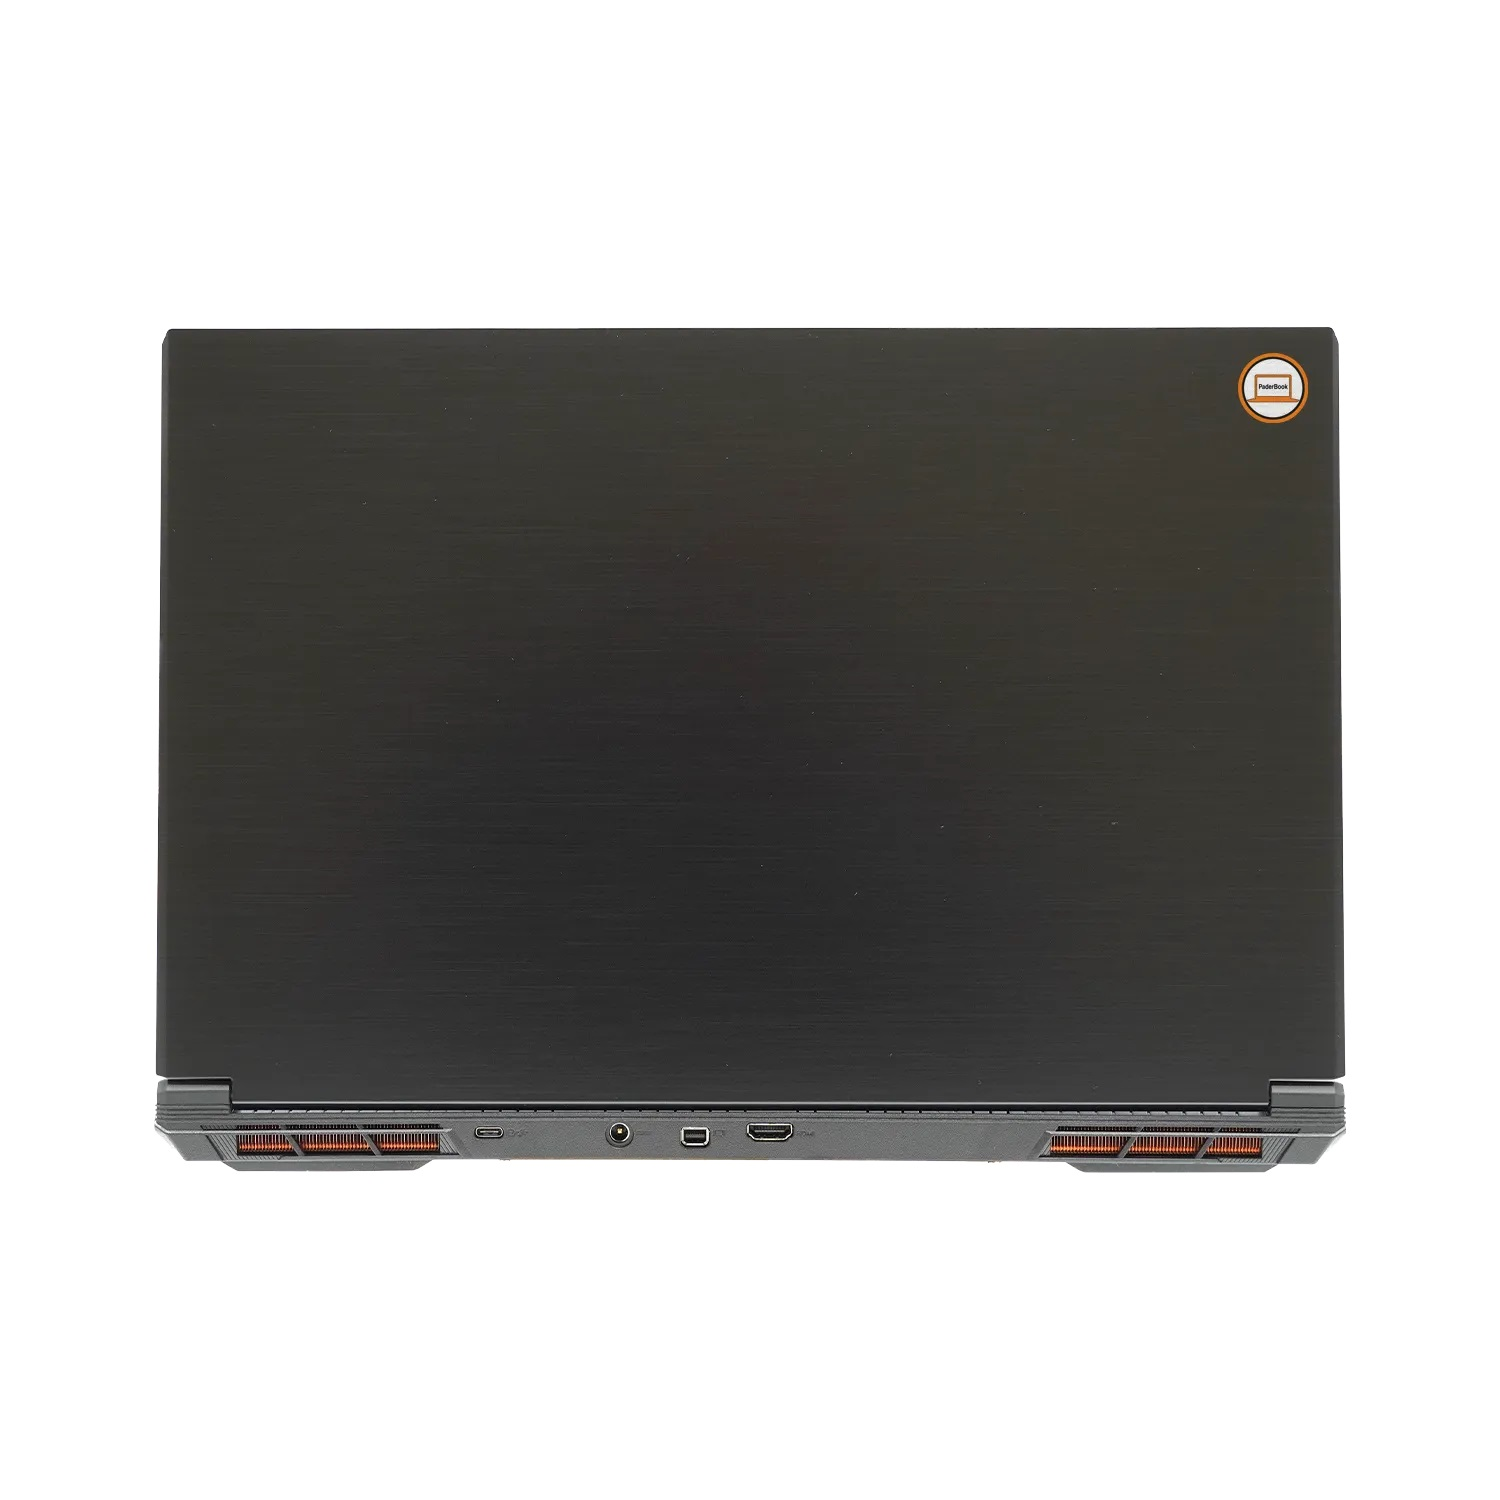 PADERBOOK CAD SSD, installiert 2000 i97, 32 17,3 Zoll fertig und Display, GB Notebook Schwarz mit aktiviert, GB RAM